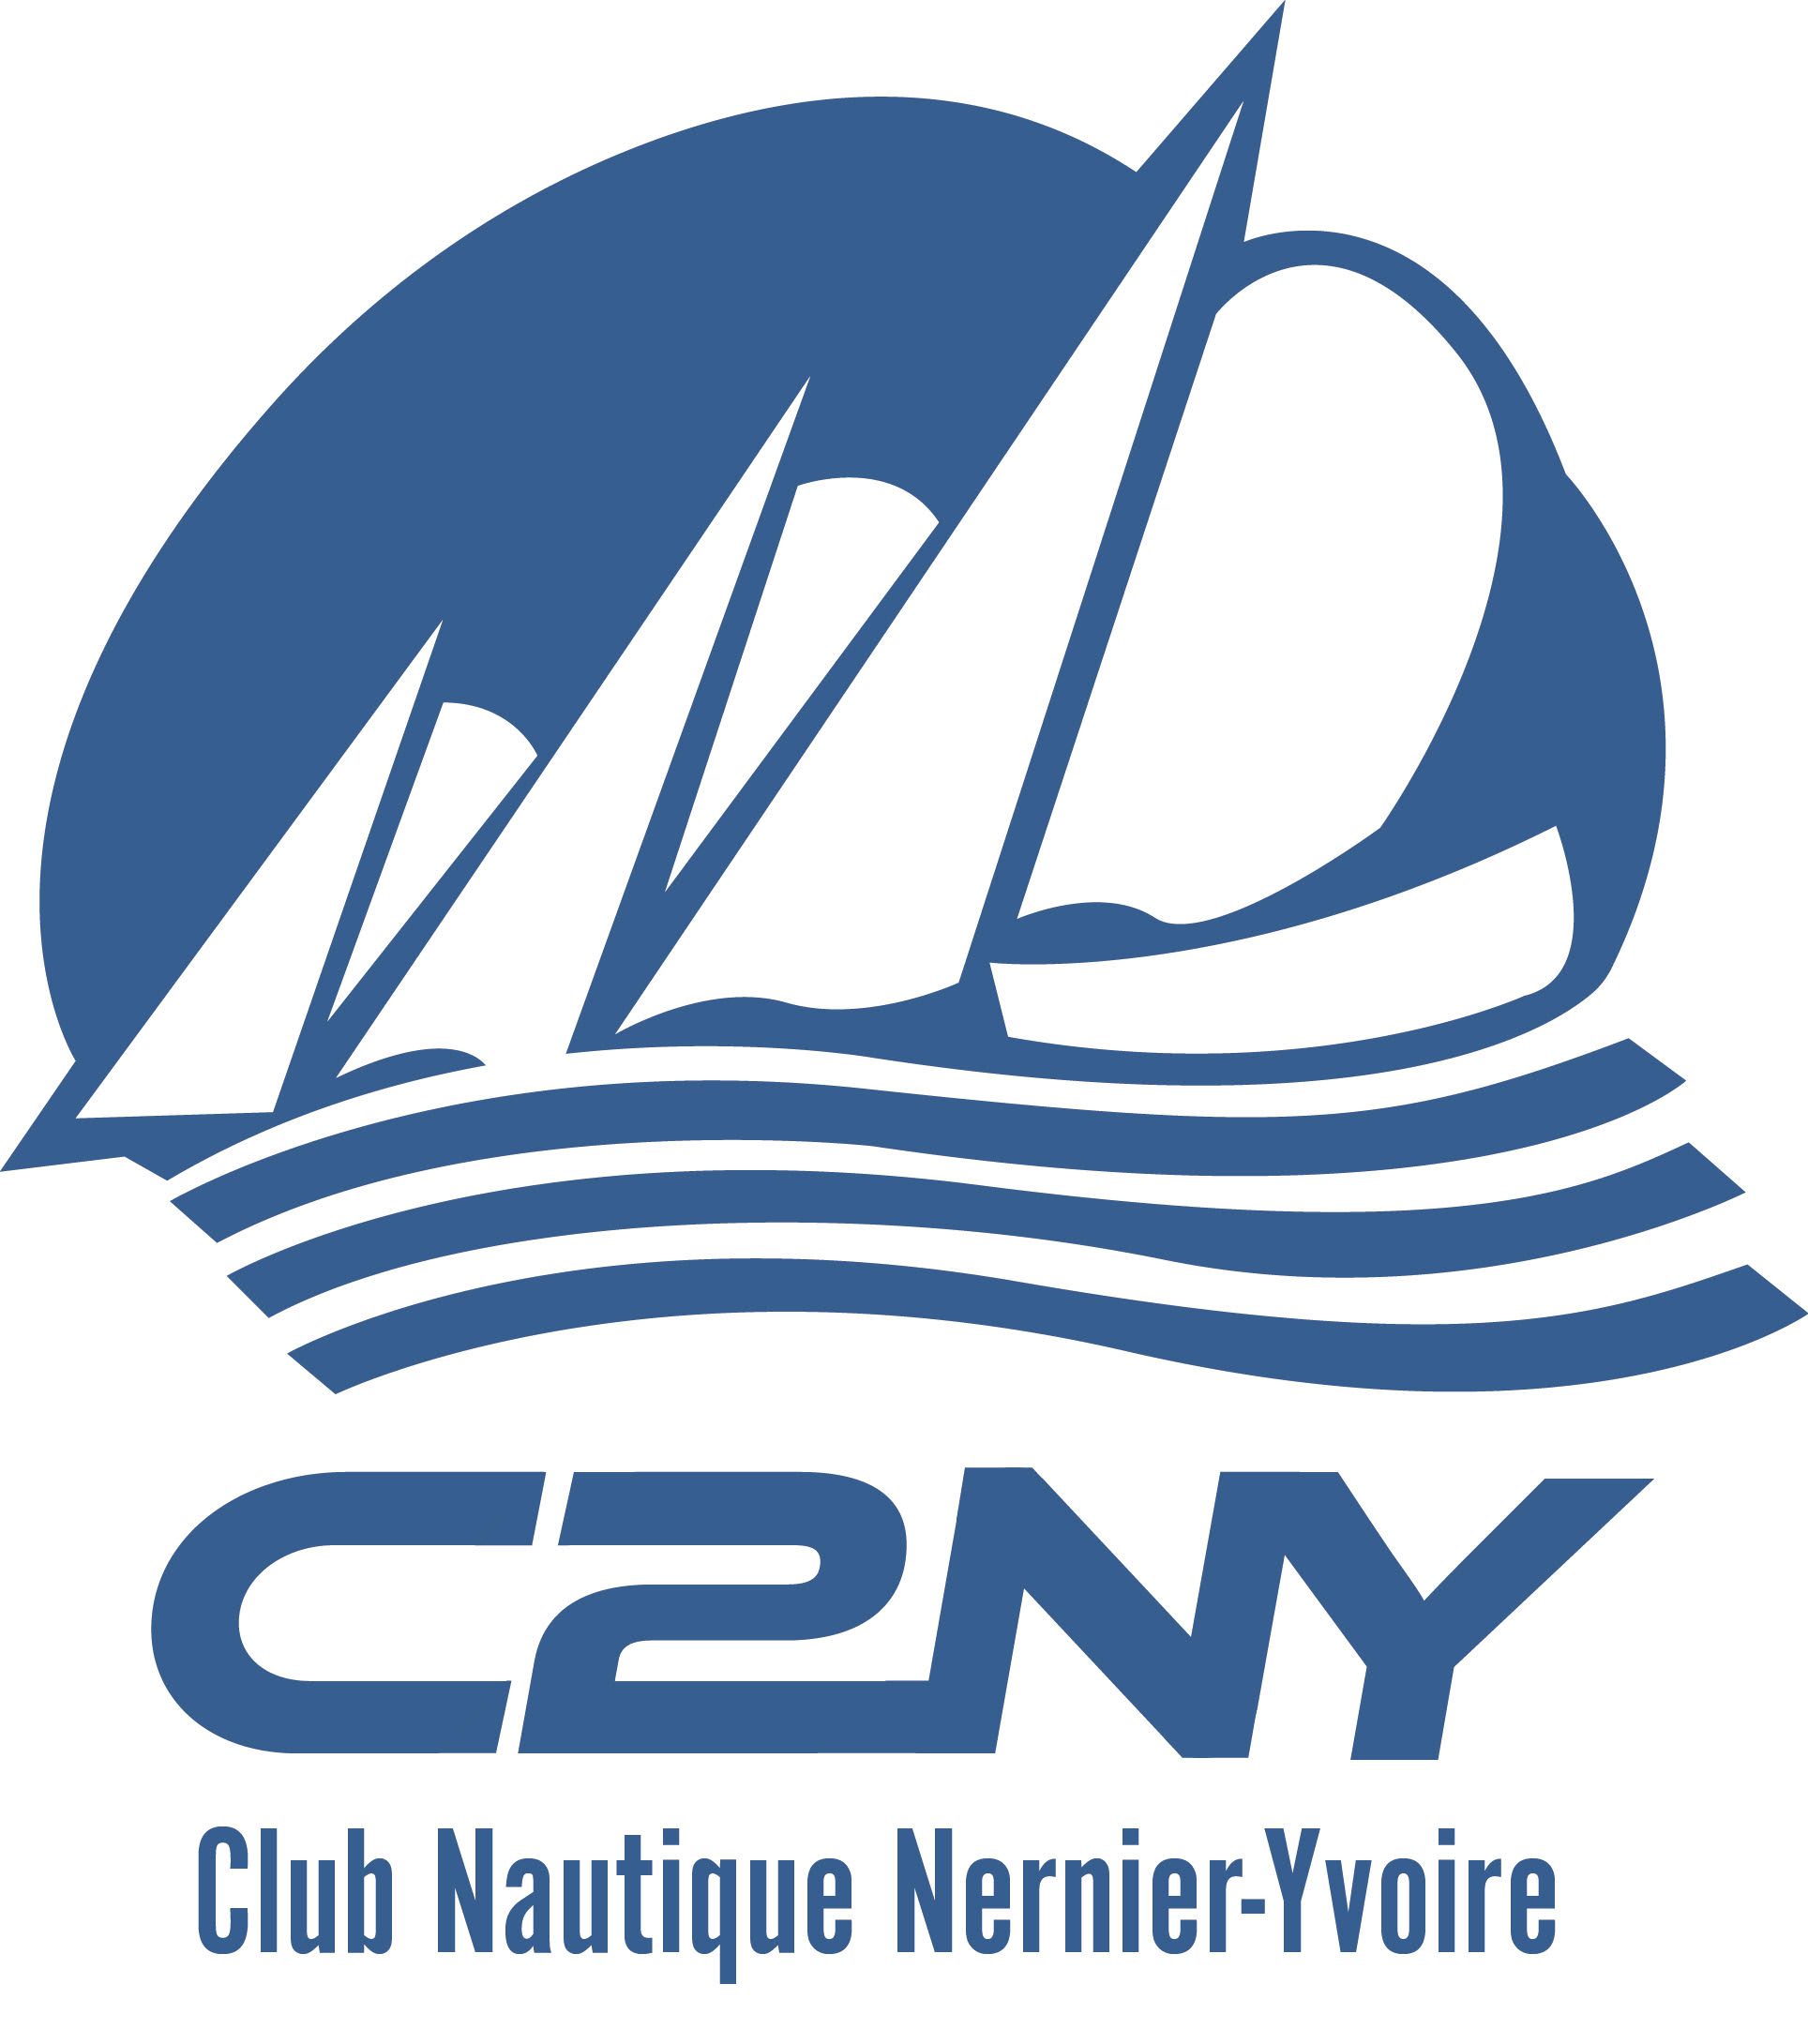 (c) C2ny.org